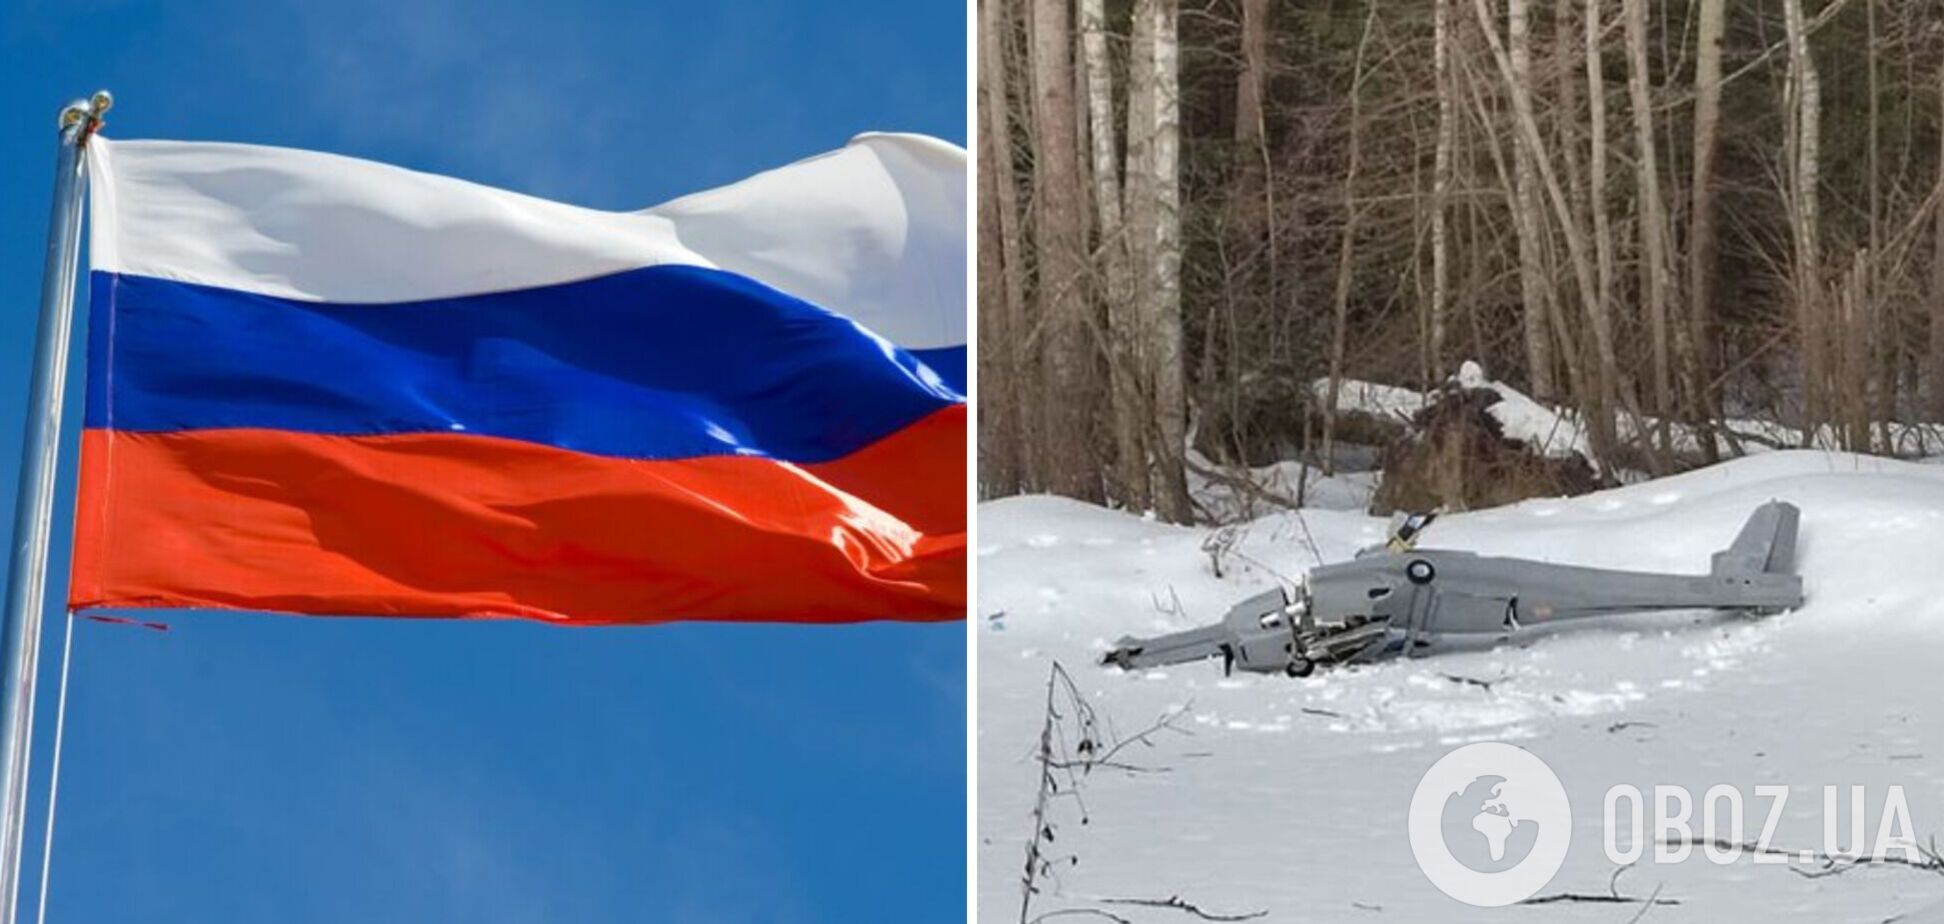 'Був начинений вибухівкою С-4': у Росії розповіли про БПЛА, який упав біля станції  'Газпрому' у Підмосков'ї